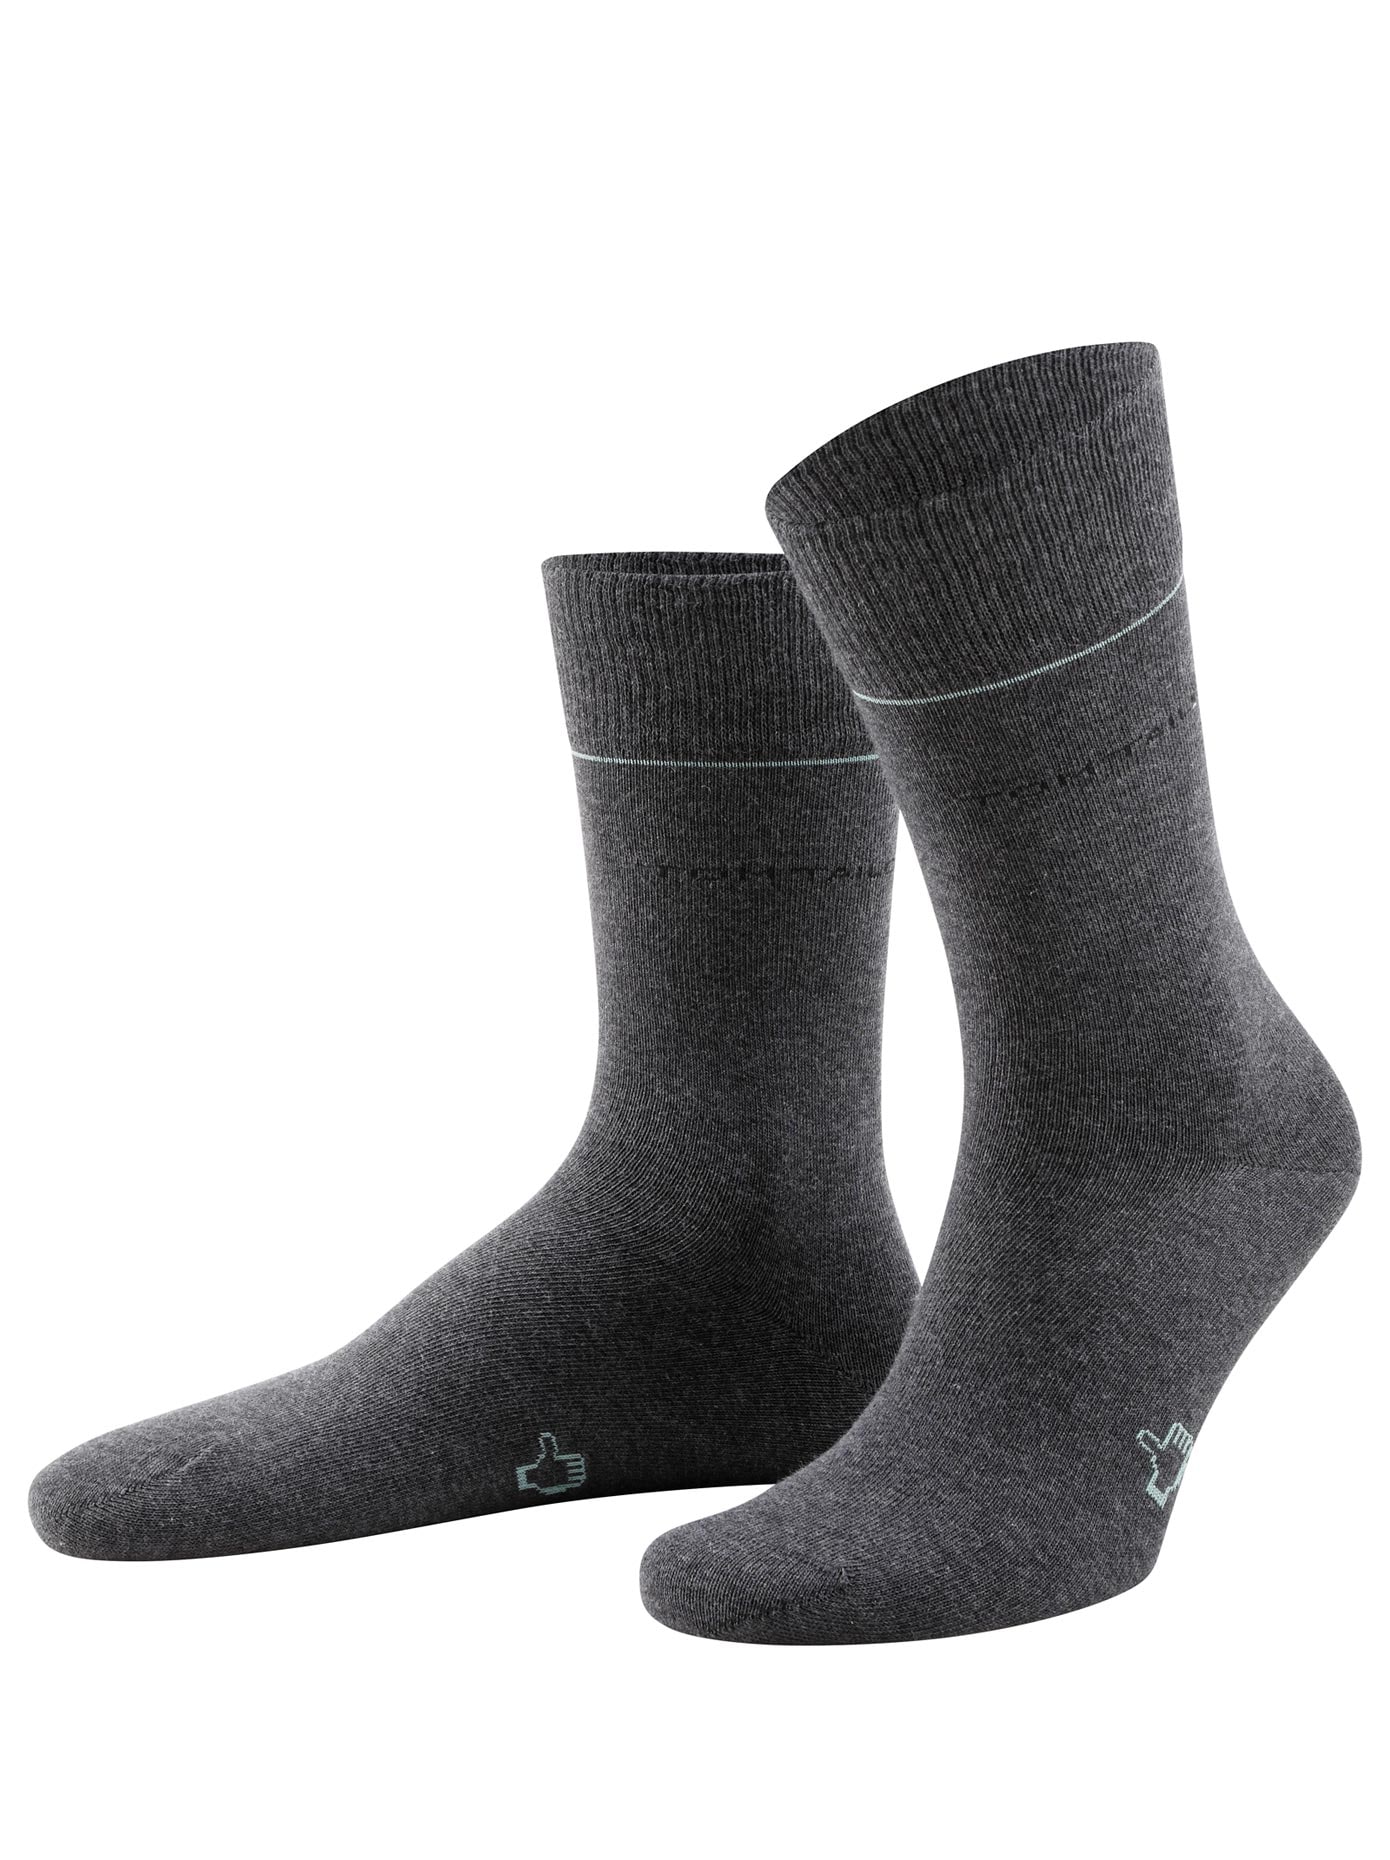 ➤ Strümpfe bestellen & ohne Socken Mindestbestellwert